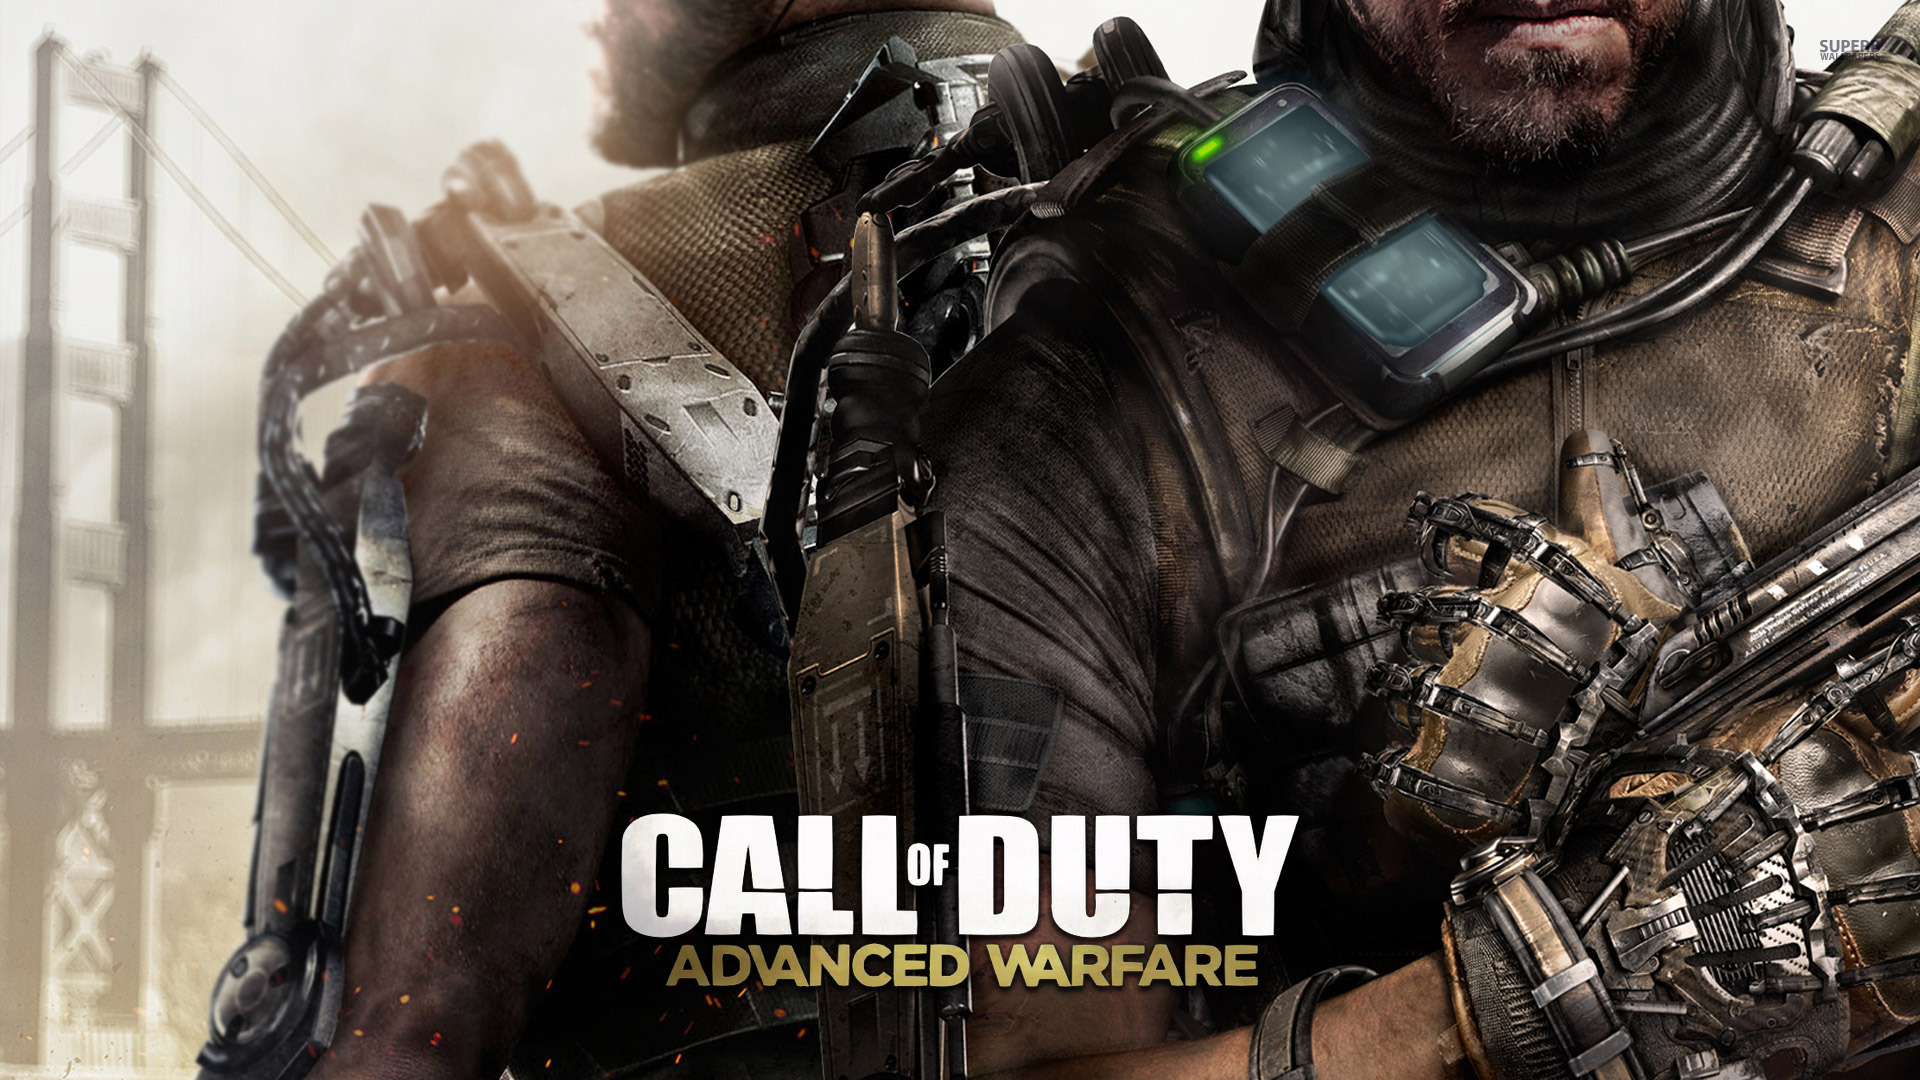 Call of Duty: Advanced Warfare wallpaper 1920x1080 jpg